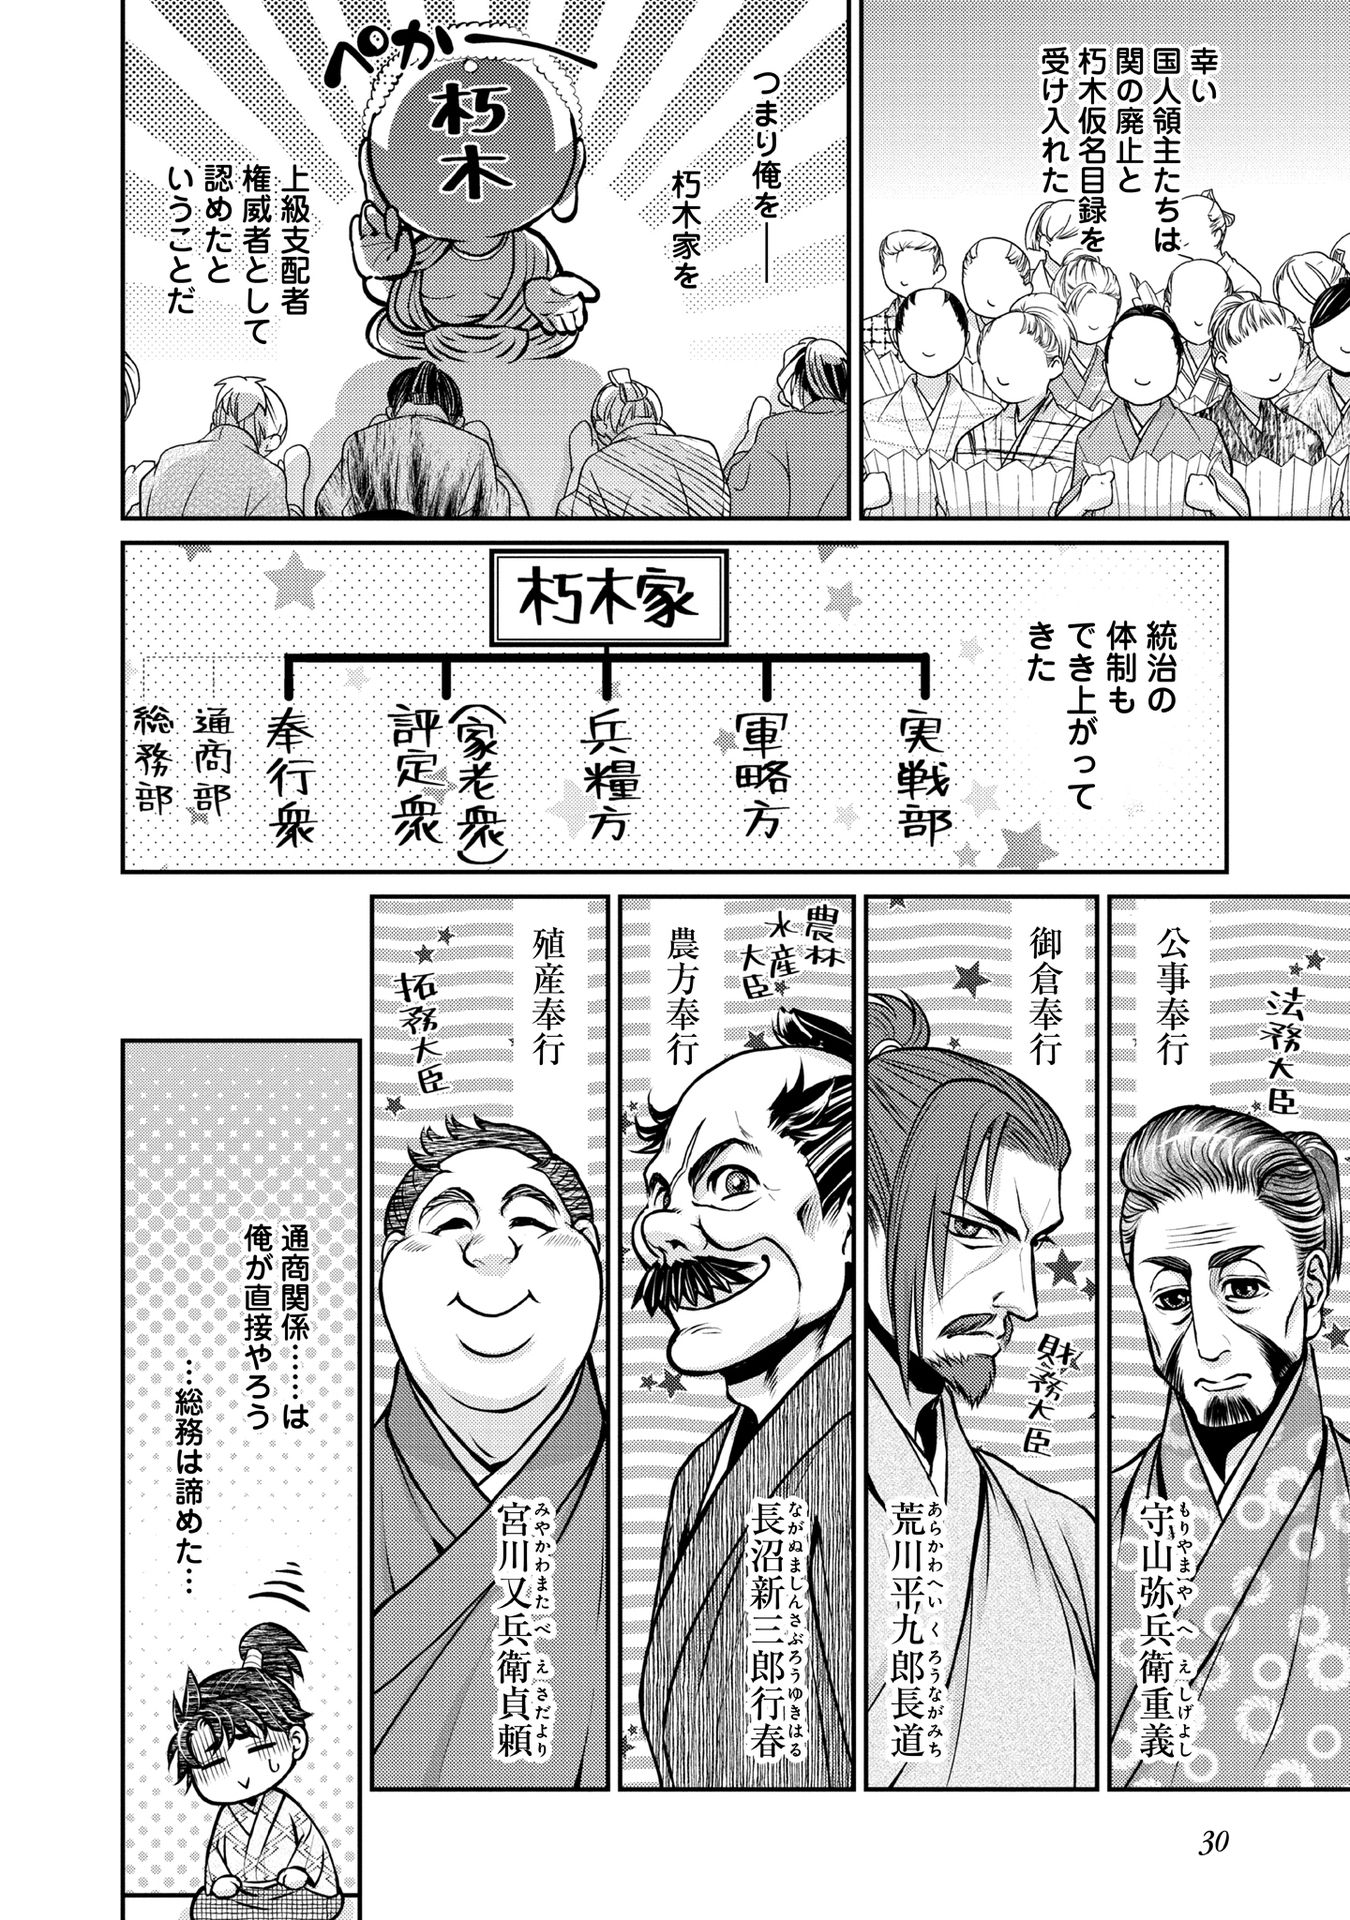 Afumi no Umi – Minamo ga Yureru Toki - Chapter 14 - Page 29